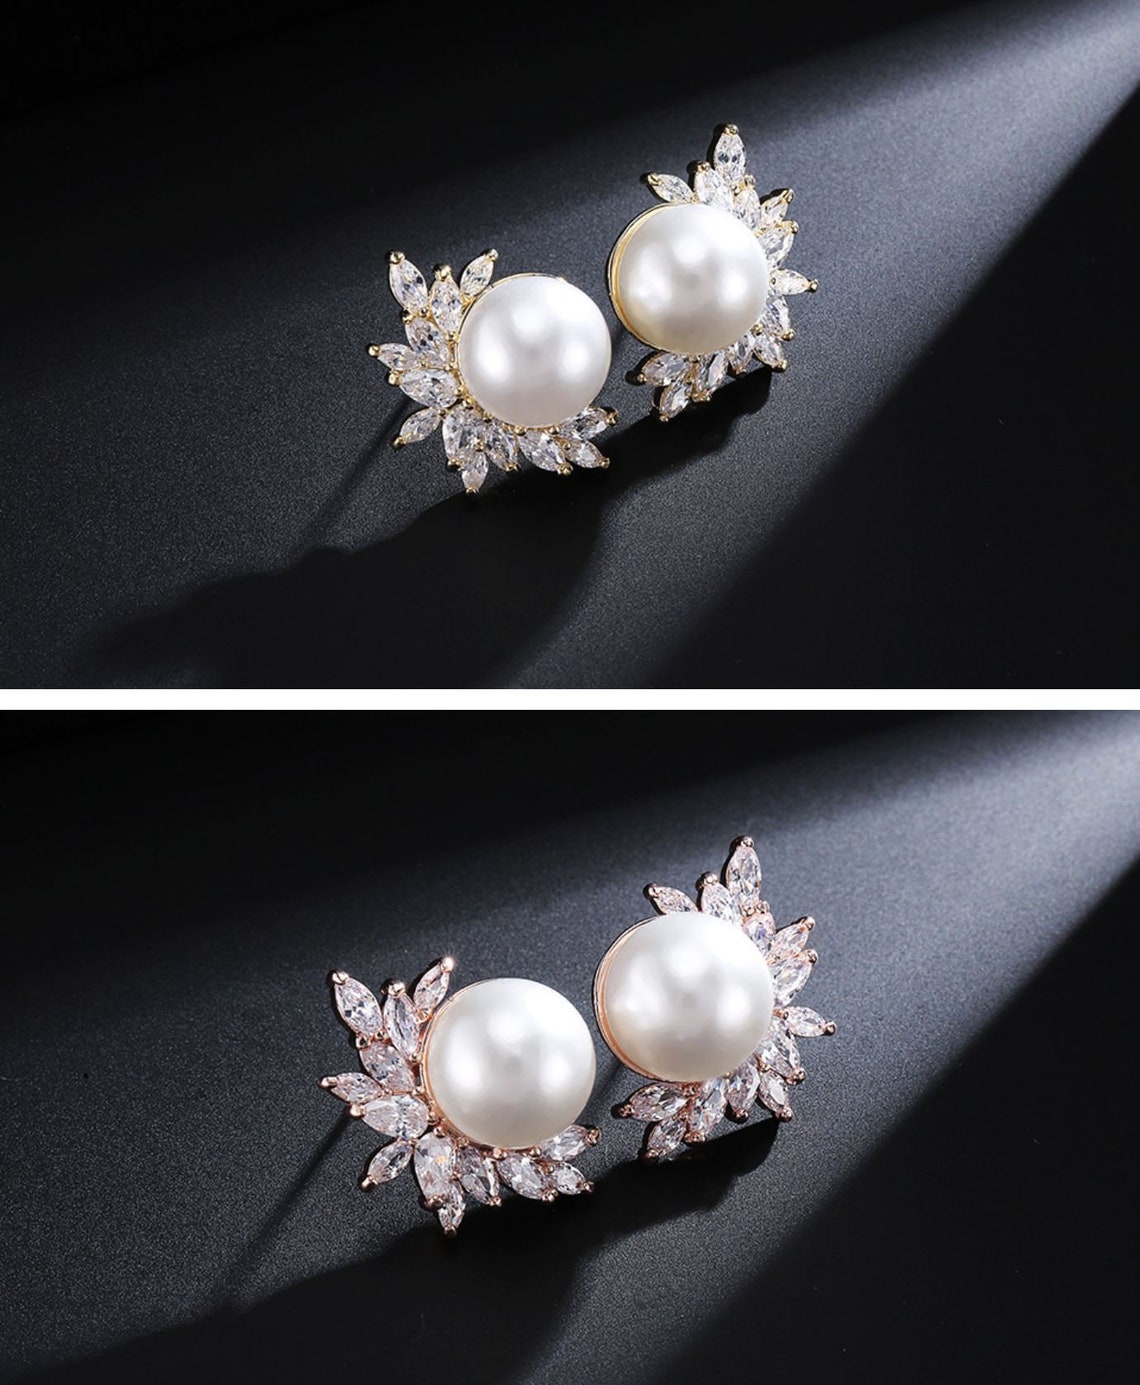 Bridal Crystal Pearl Stud Earrings Crystal Wedding Earrings | Etsy